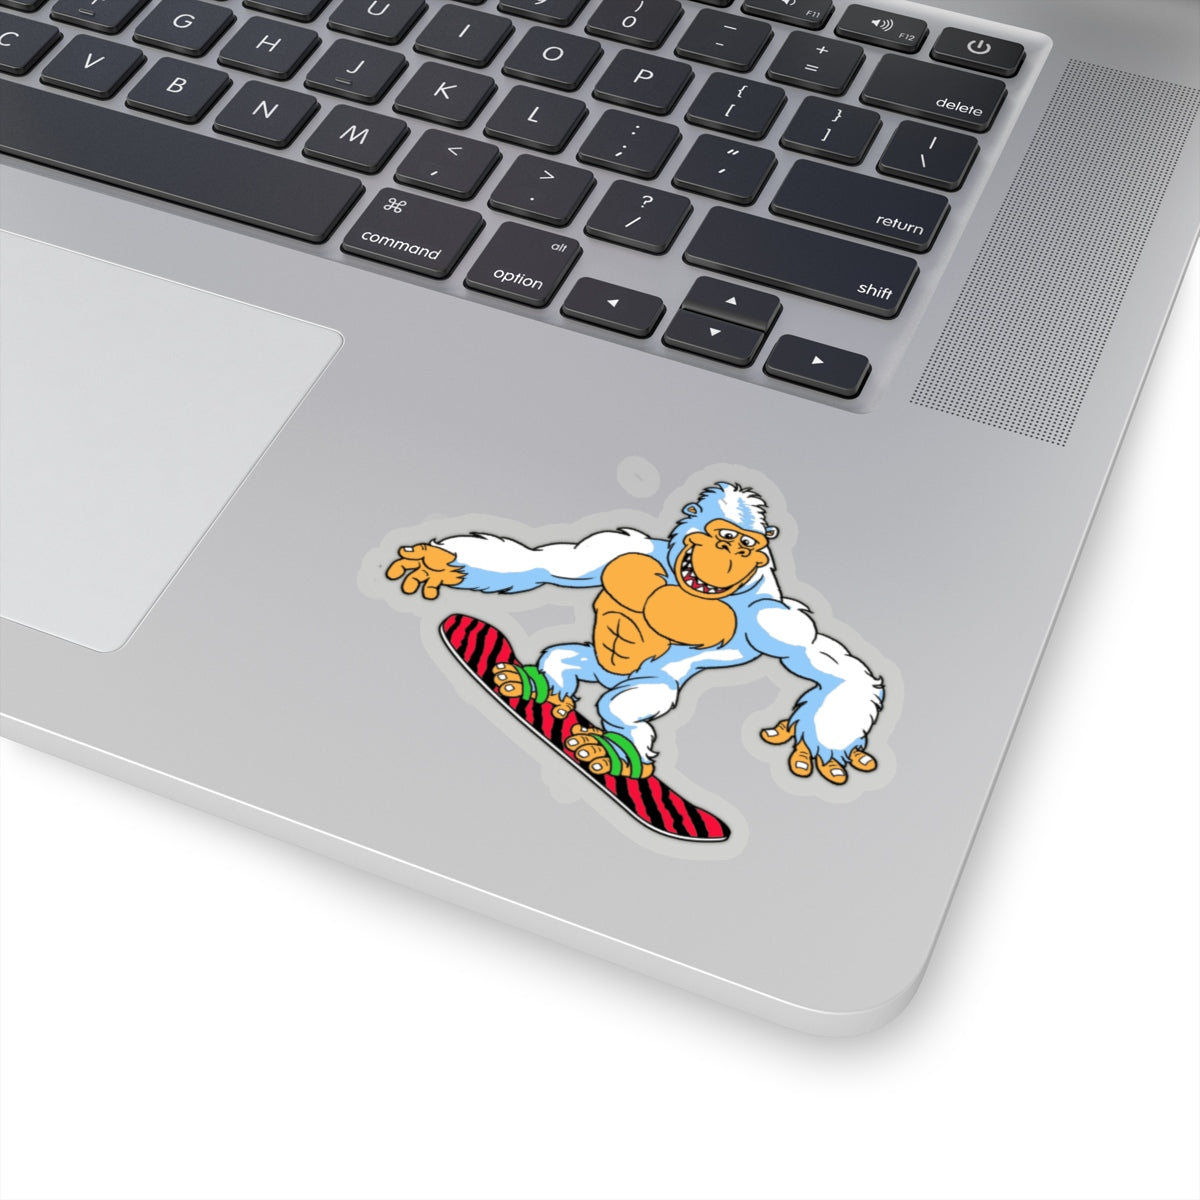 Snorilla snowboard sticker - Sno Cal